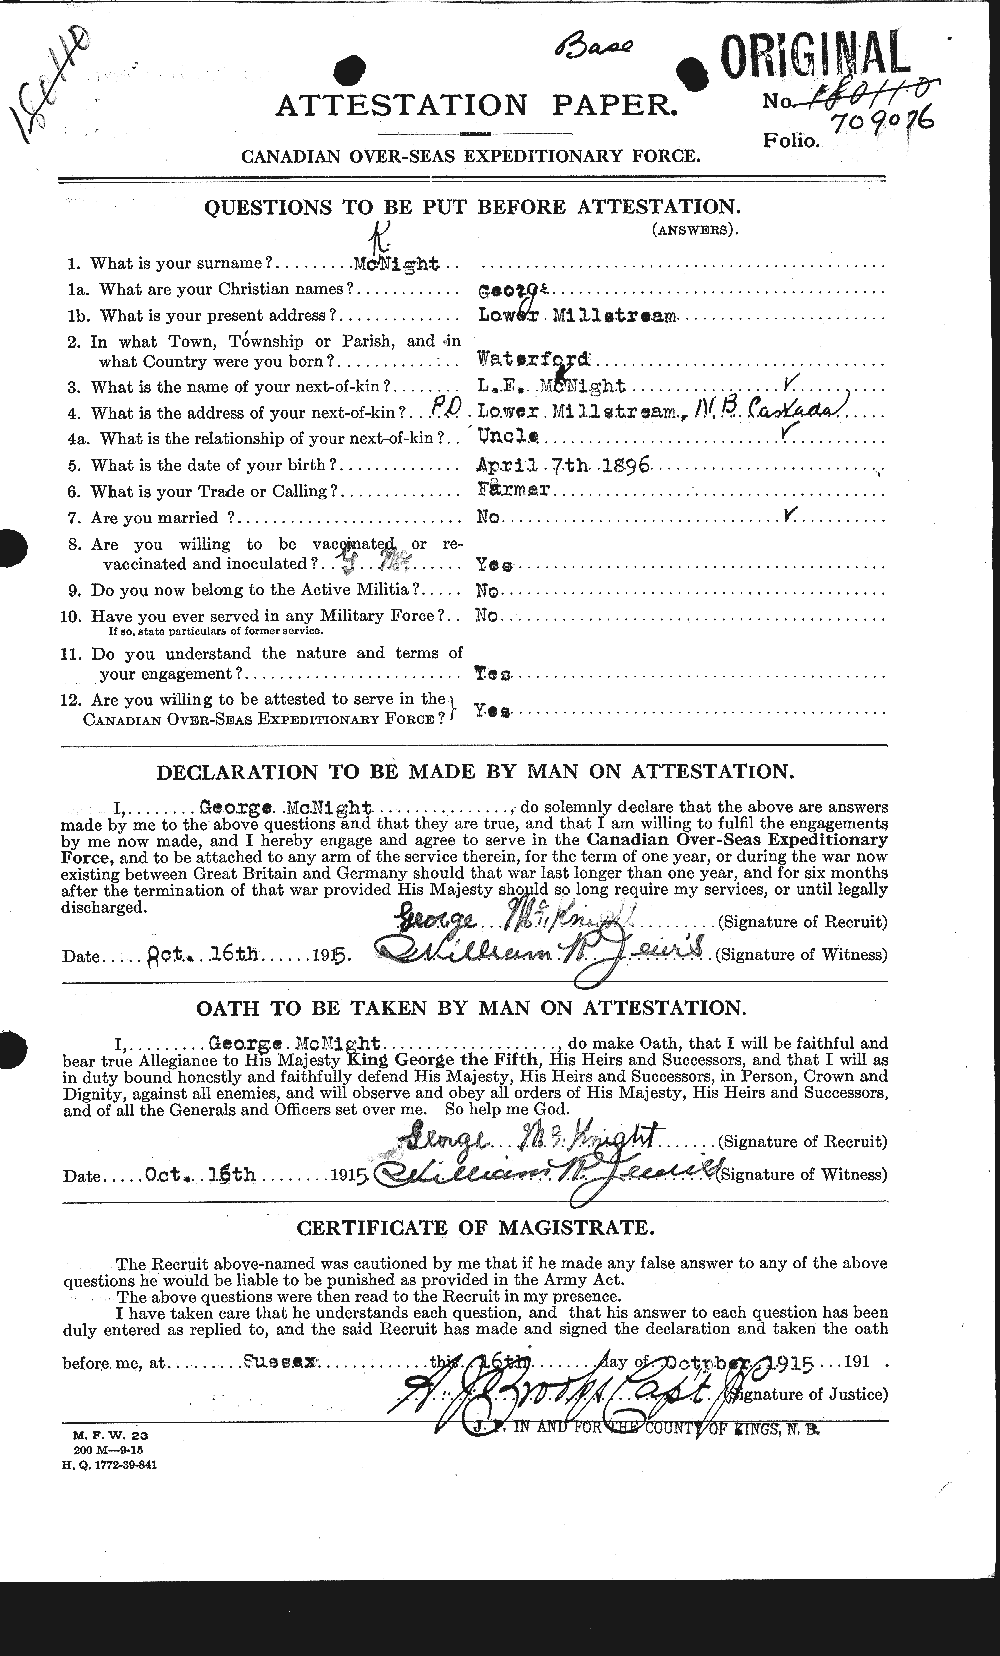 Dossiers du Personnel de la Première Guerre mondiale - CEC 530712a